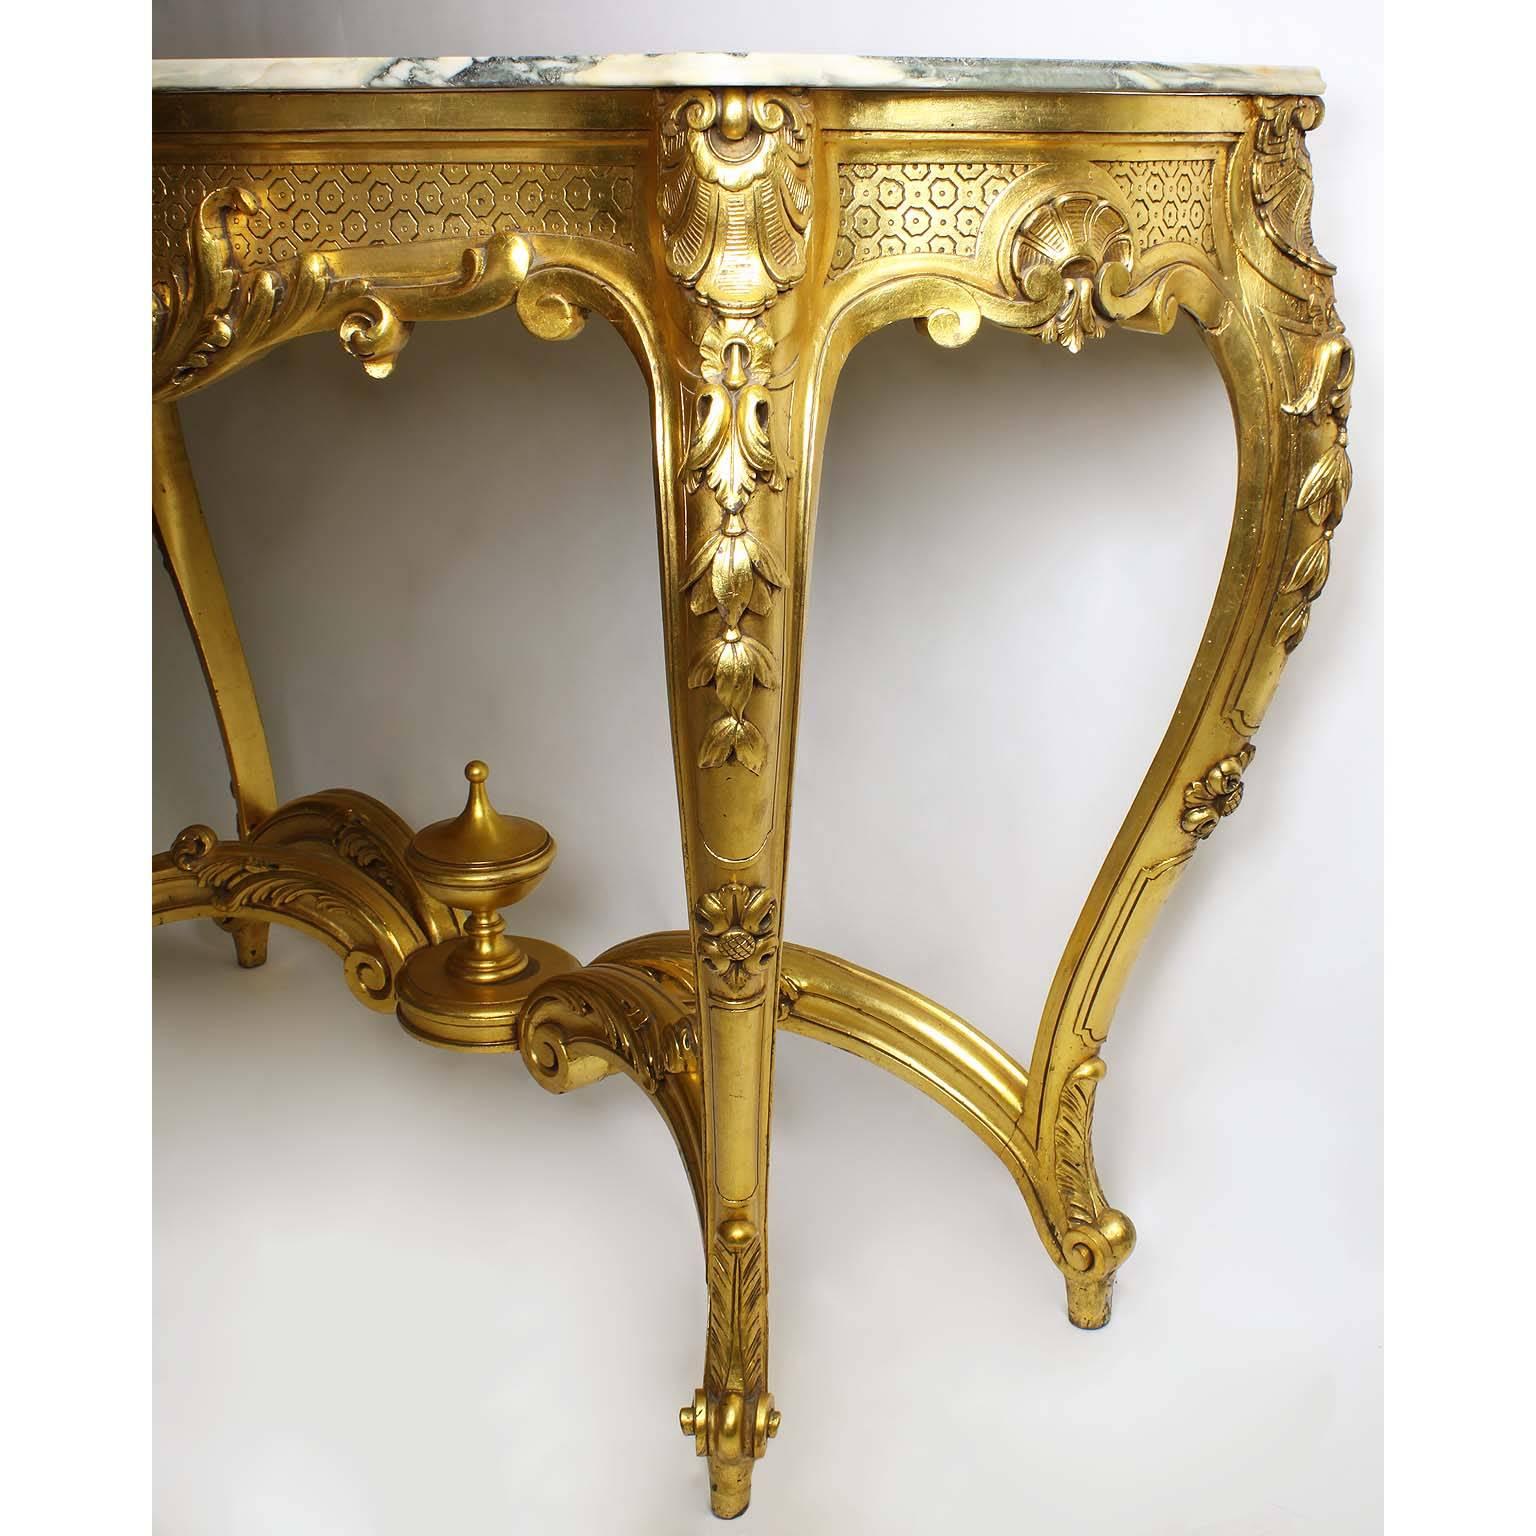 Console serpentine de style Louis XV en bois doré sculpté avec dessus en marbre. Le grand cadre élancé et indépendant en bois doré sculpté, centré d'une coquille florale surmontée d'acanthes, repose sur quatre pieds cabriolets en forme de 